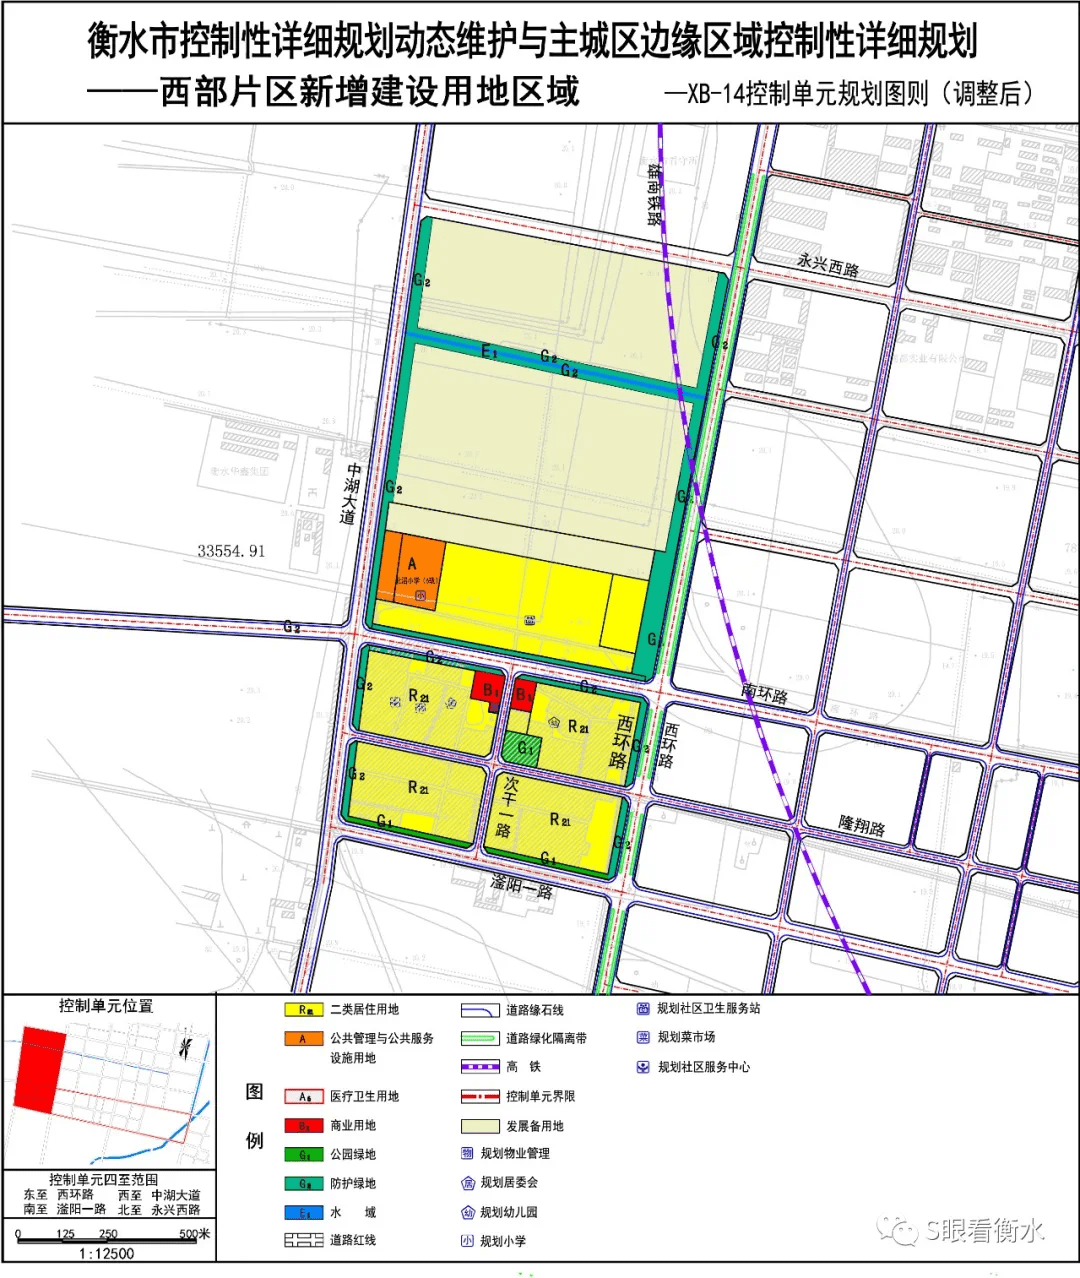 衡水市中心城区核心区域(含高新区西区)控制性详细规划维护调整